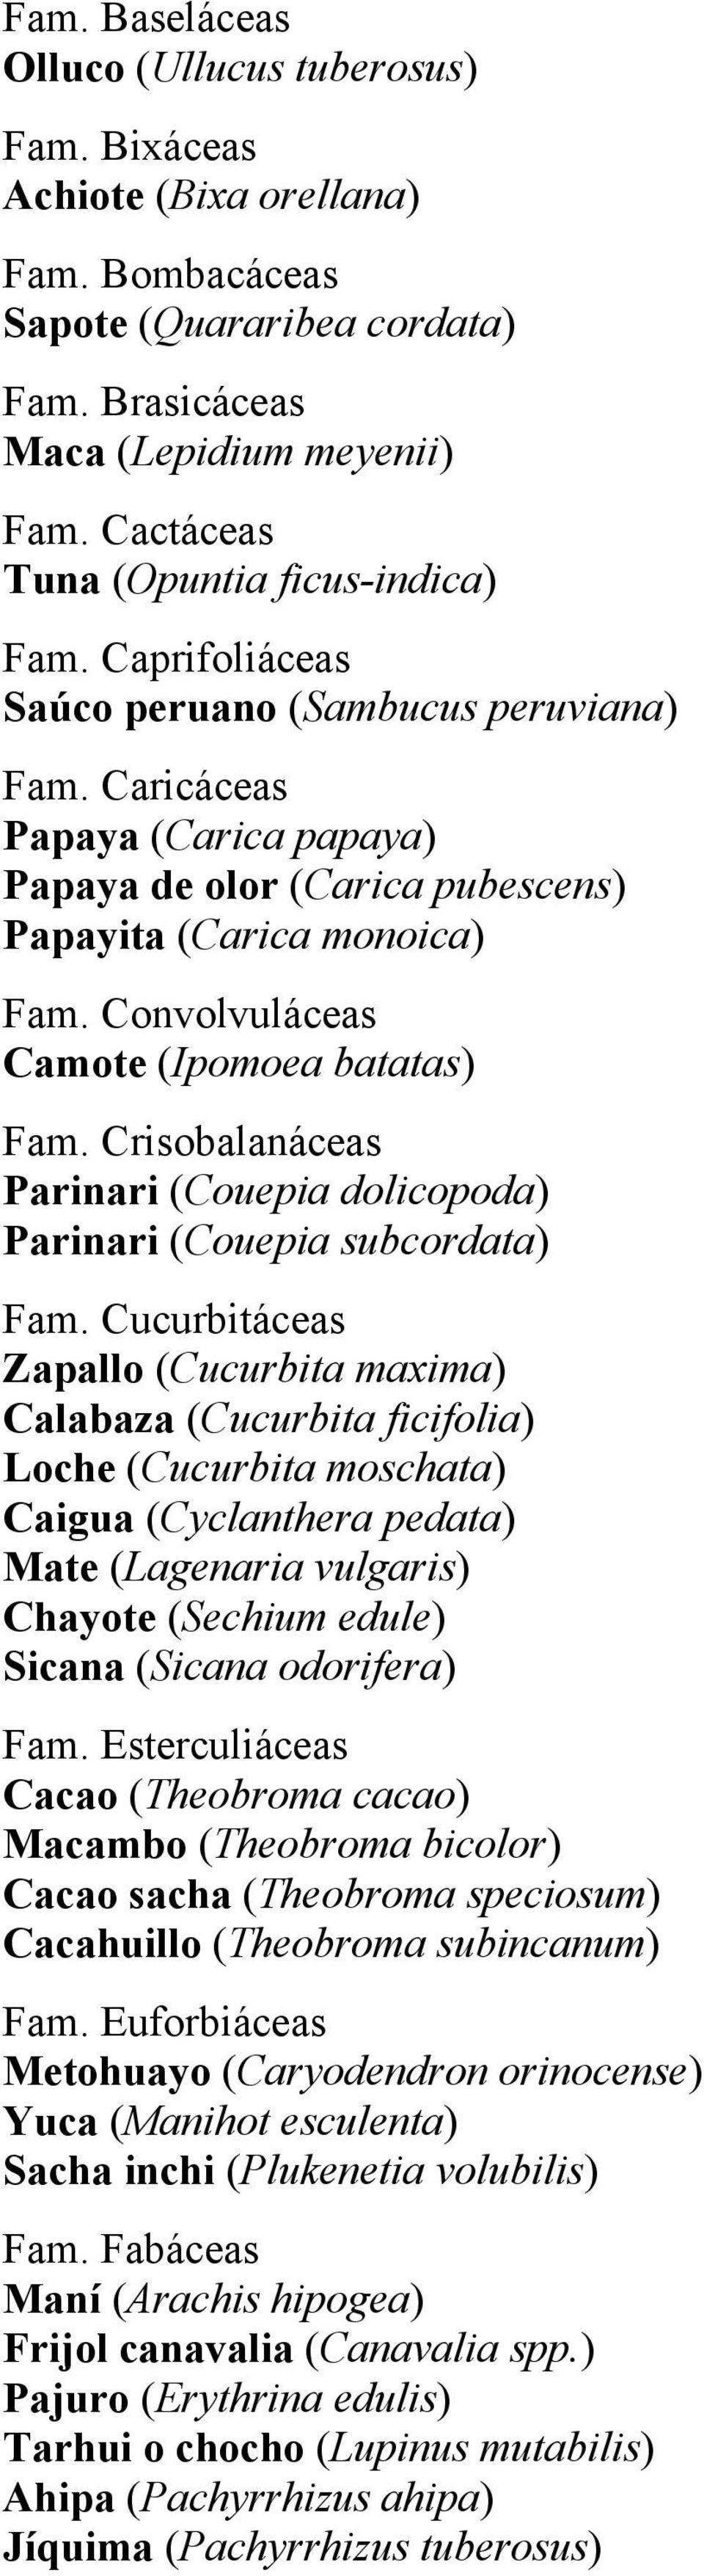 Convolvuláceas Camote (Ipomoea batatas) Fam. Crisobalanáceas Parinari (Couepia dolicopoda) Parinari (Couepia subcordata) Fam.